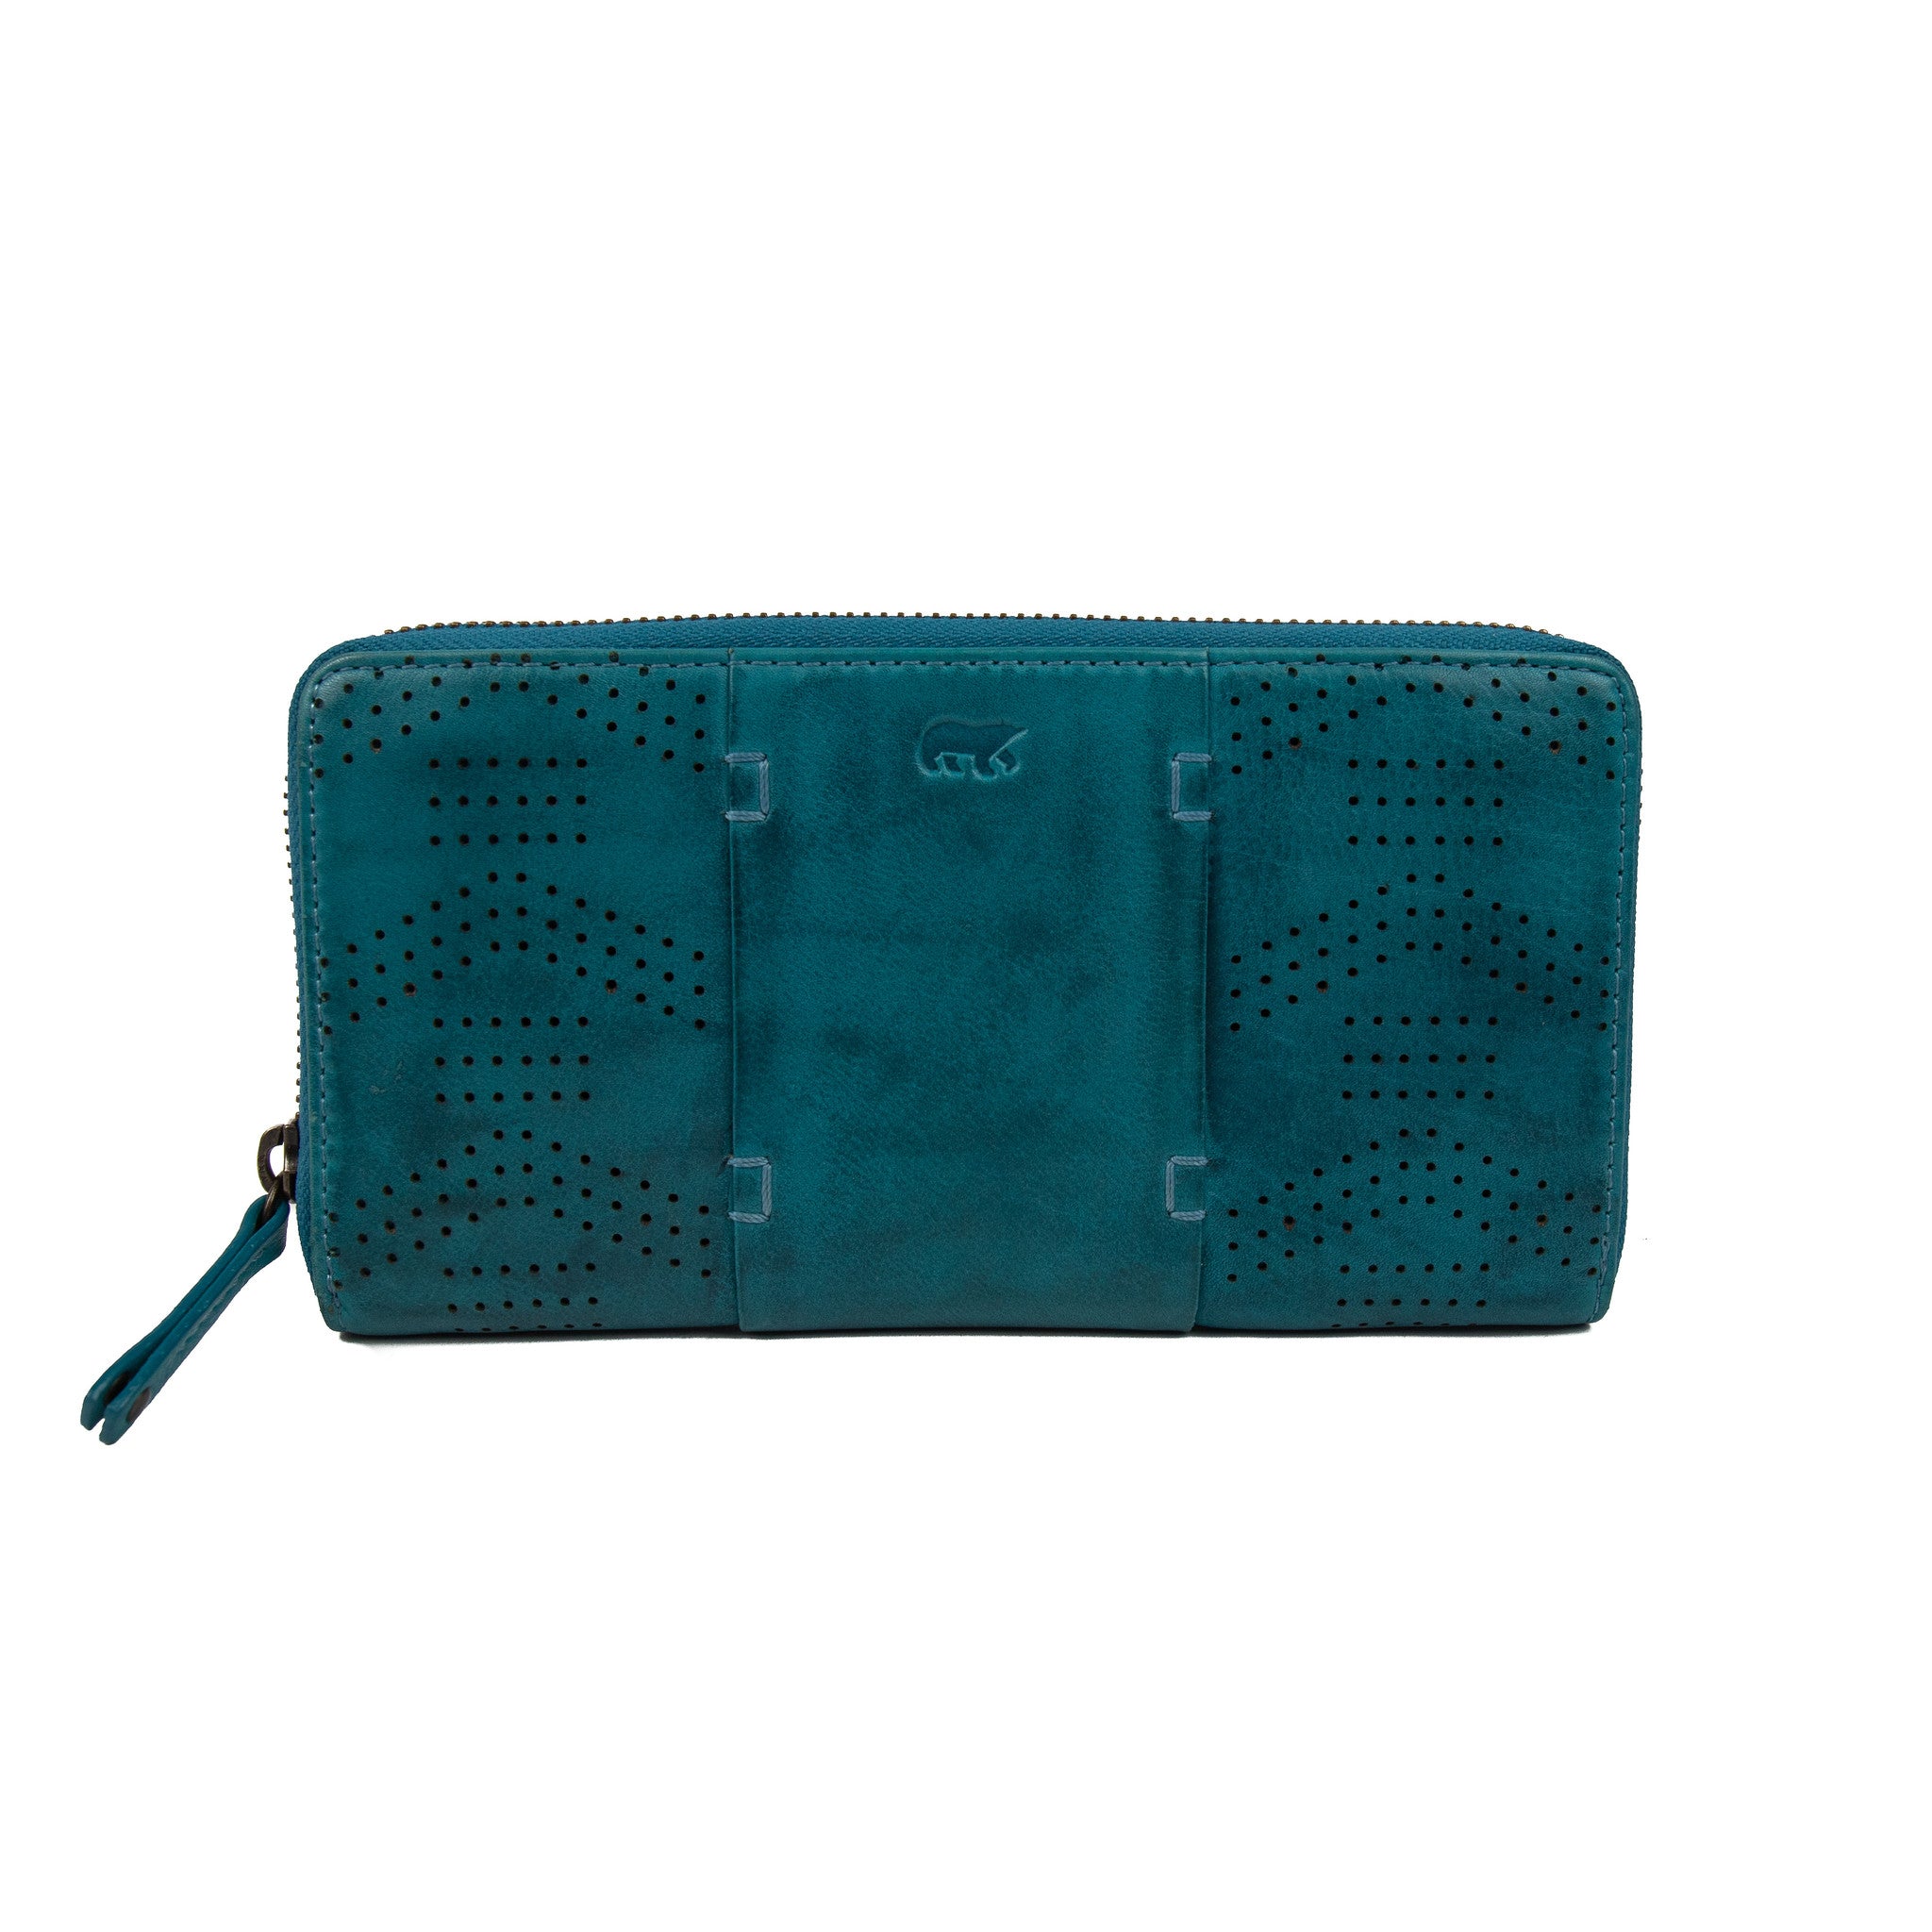 Zipper wallet 'Mirte' aqua - CL 18207